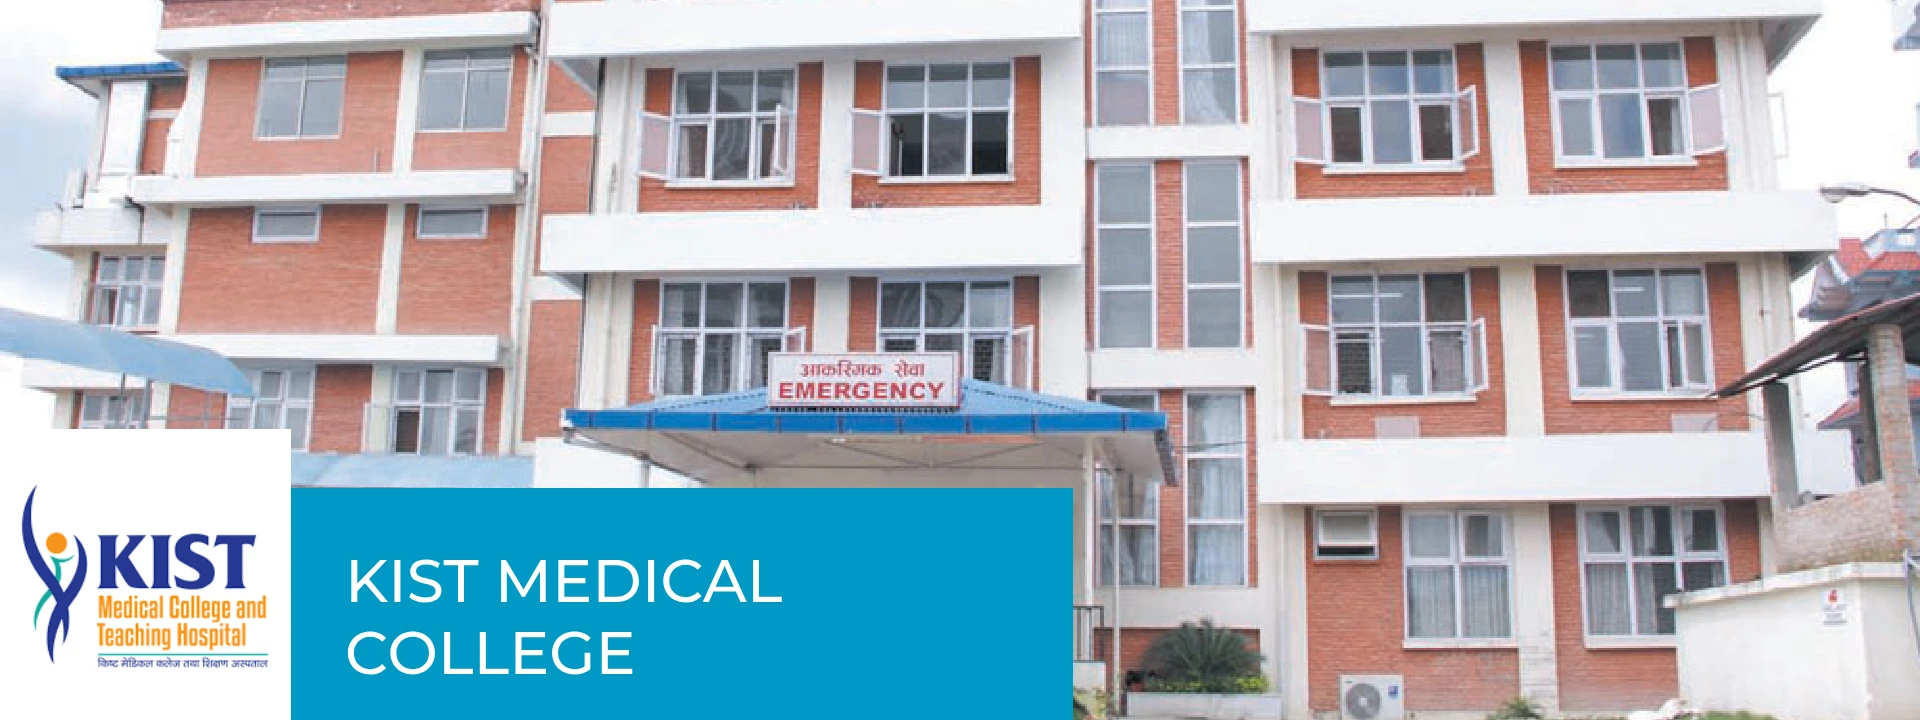 Kist medical college